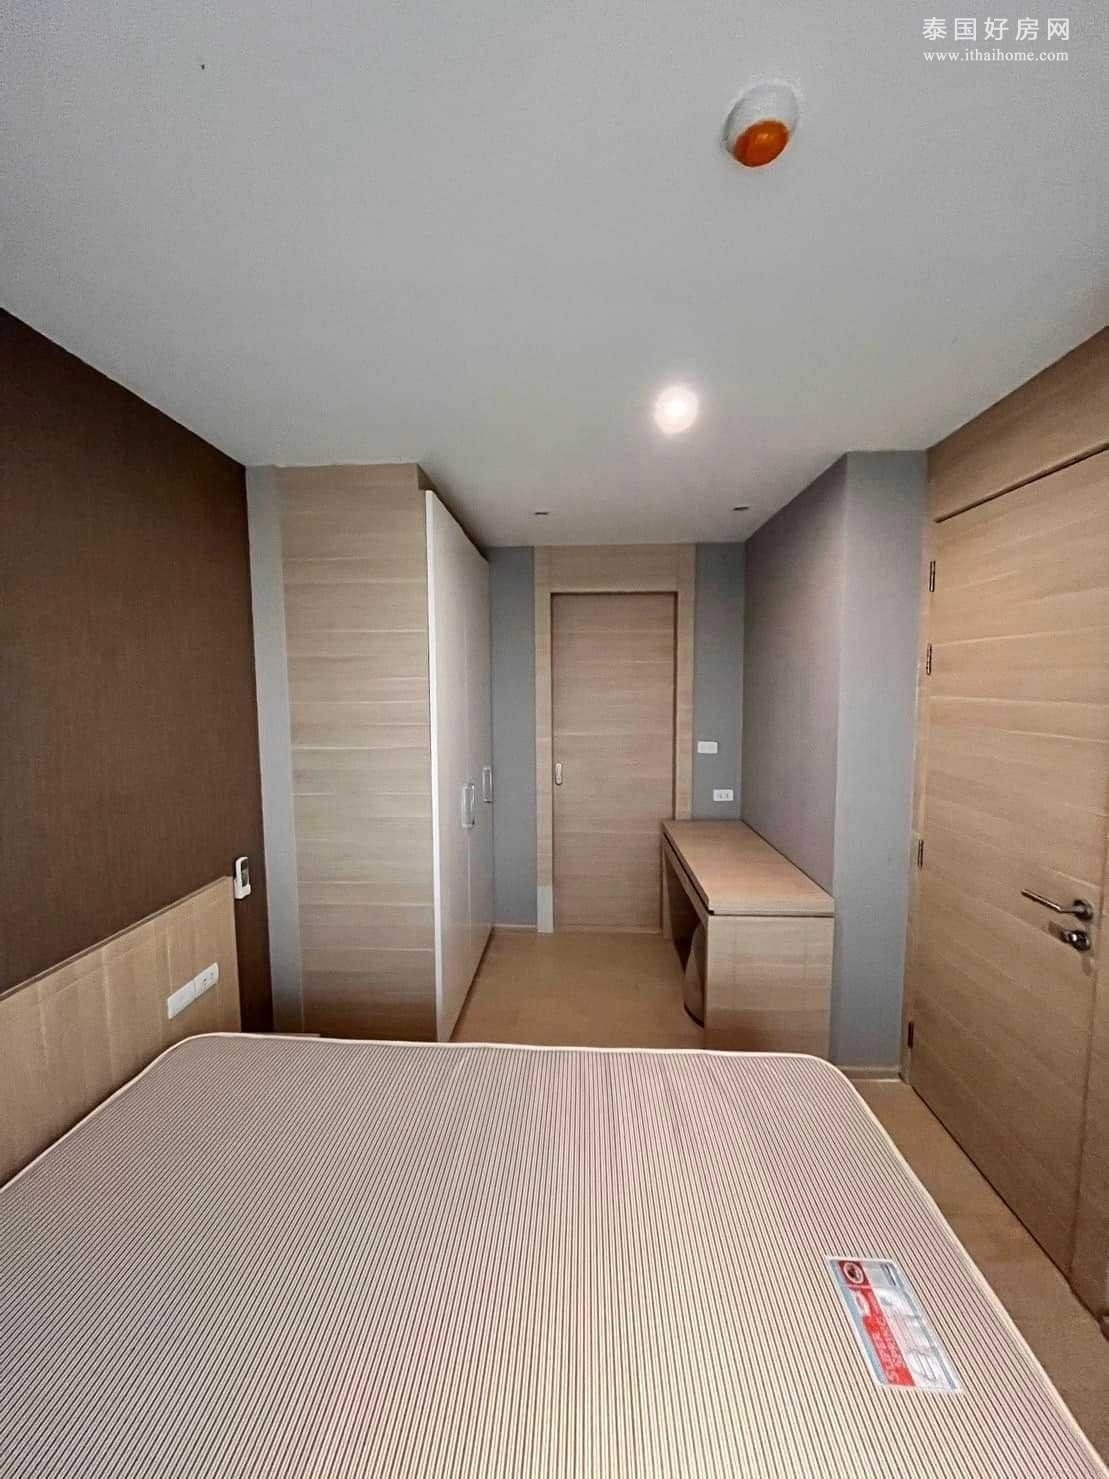 挽叻区 | Klass Silom 公寓出租/售 1卧 33平米 租金23,000泰铢/月，售价489万泰铢